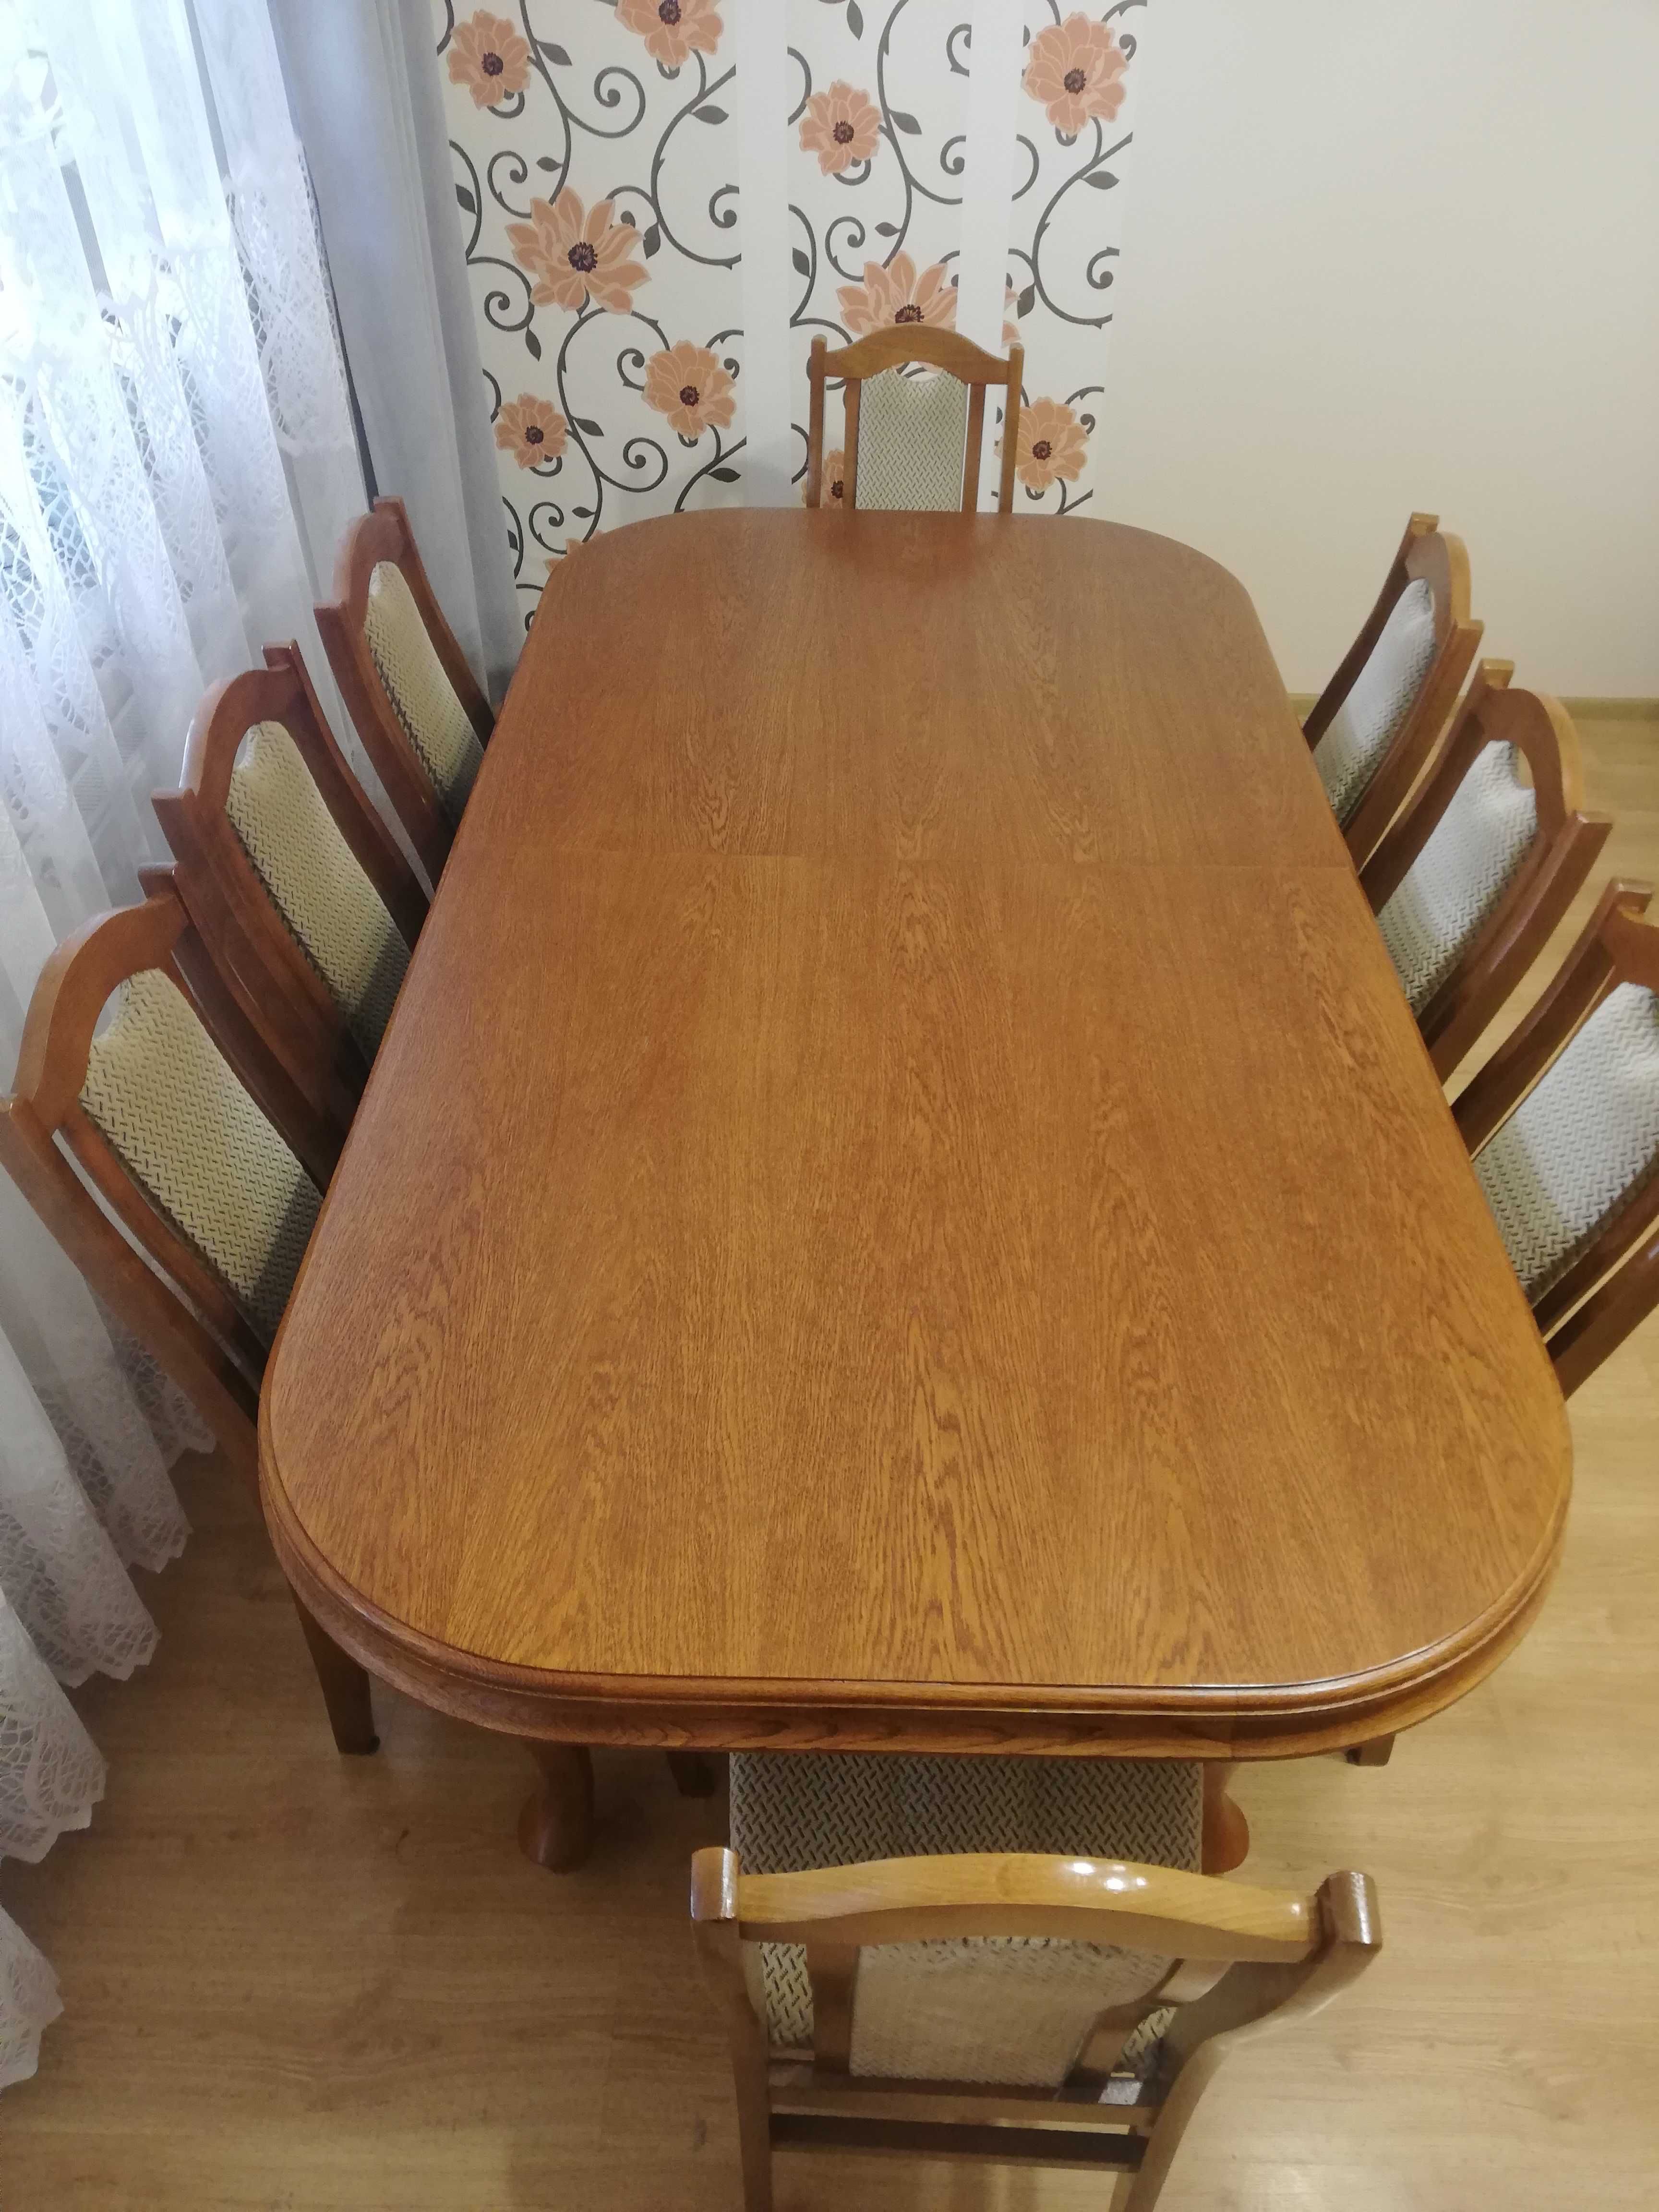 Drewniany stół i 8 krzeseł